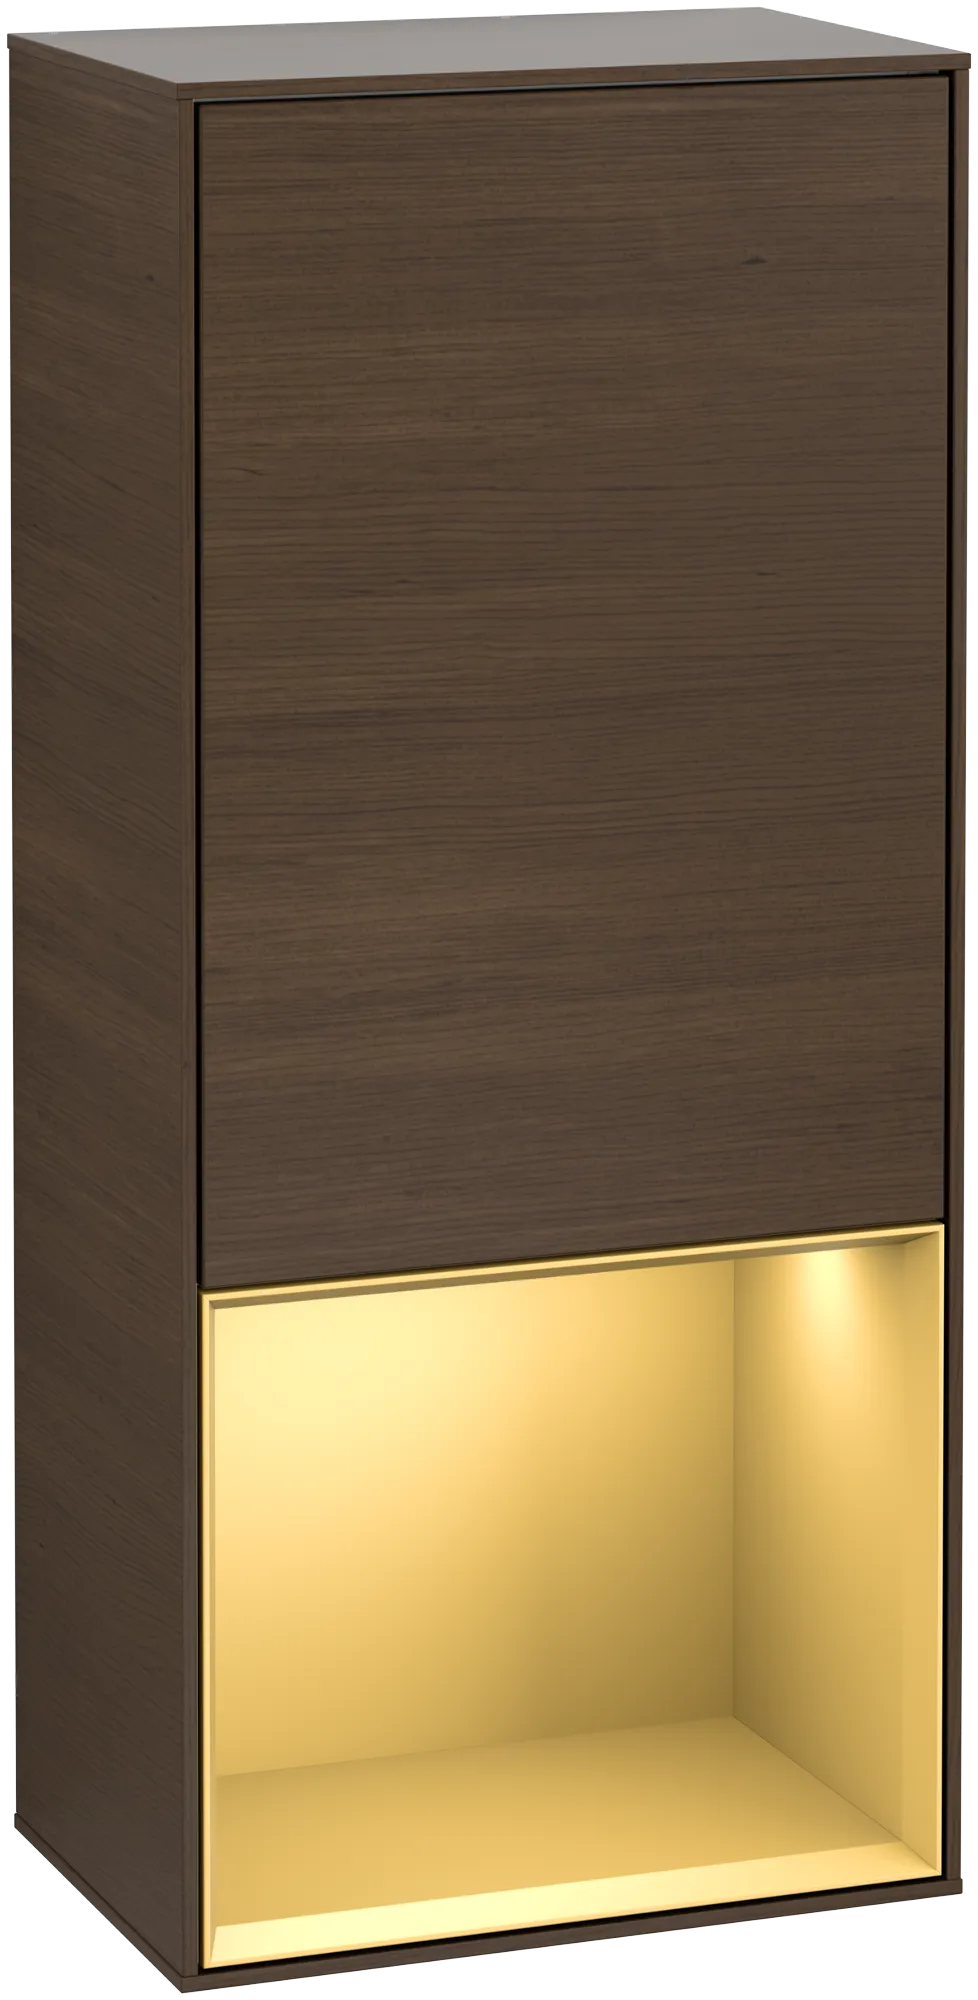 Bild von VILLEROY BOCH Finion Seitenschrank, mit Beleuchtung, 1 Tür, 418 x 936 x 270 mm, Walnut Veneer / Gold Matt Lacquer #G540HFGN